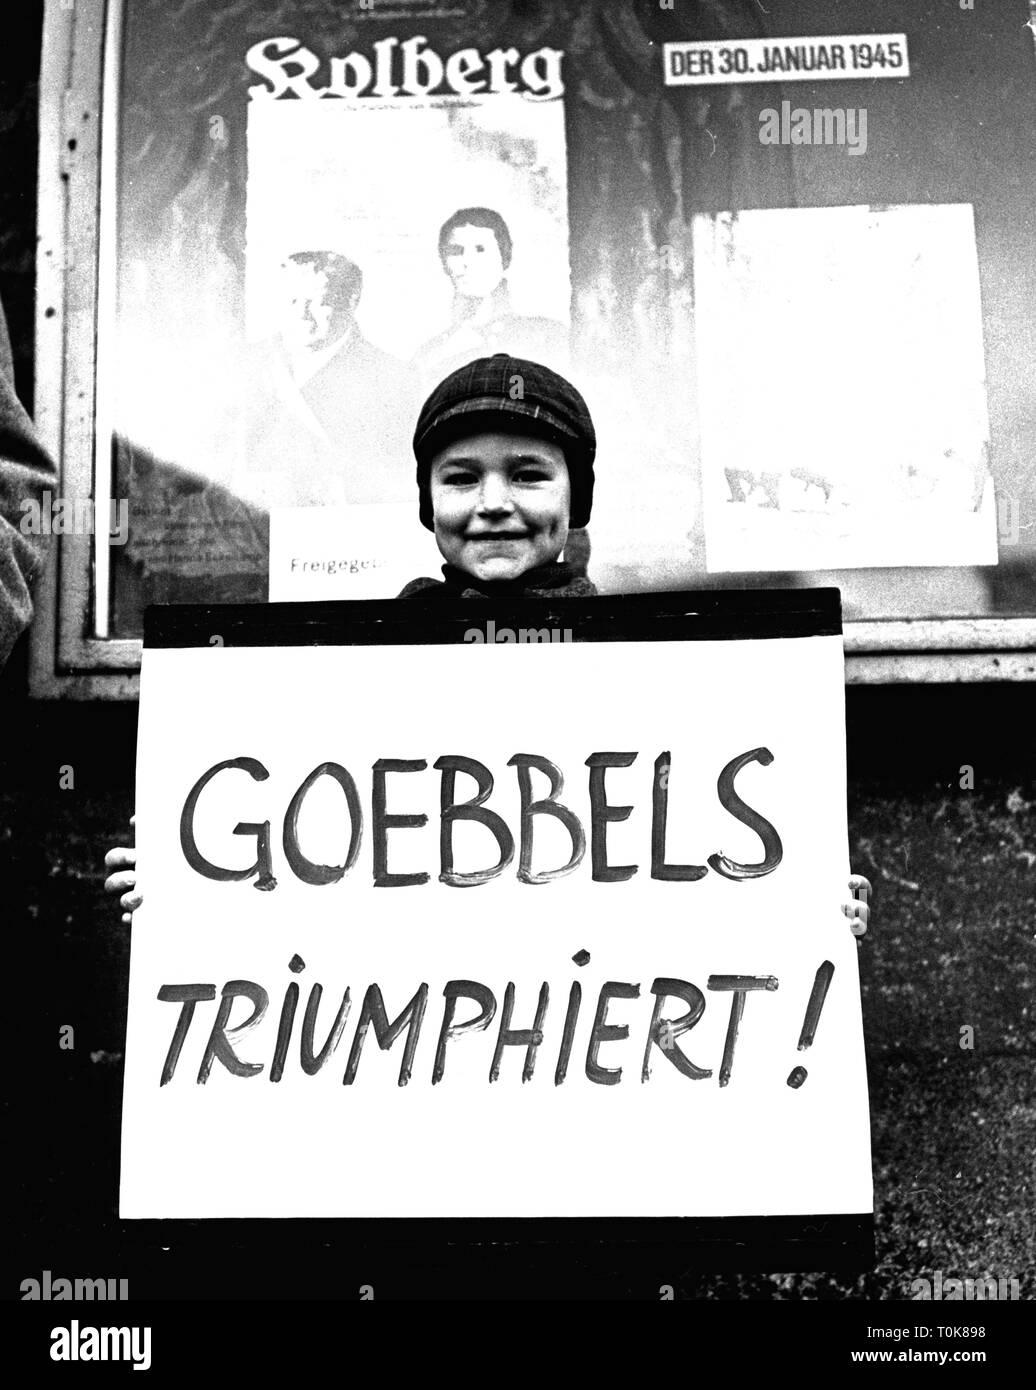 Film / cinéma, 'Goebbels triumphiert' (Goebbels) triomphant, petit garçon avec plaque de protestation contre le redémarrage de la propagande national-socialiste film 'Kolberg', novembre 1965, Additional-Rights Clearance-Info-Not-Available- Banque D'Images